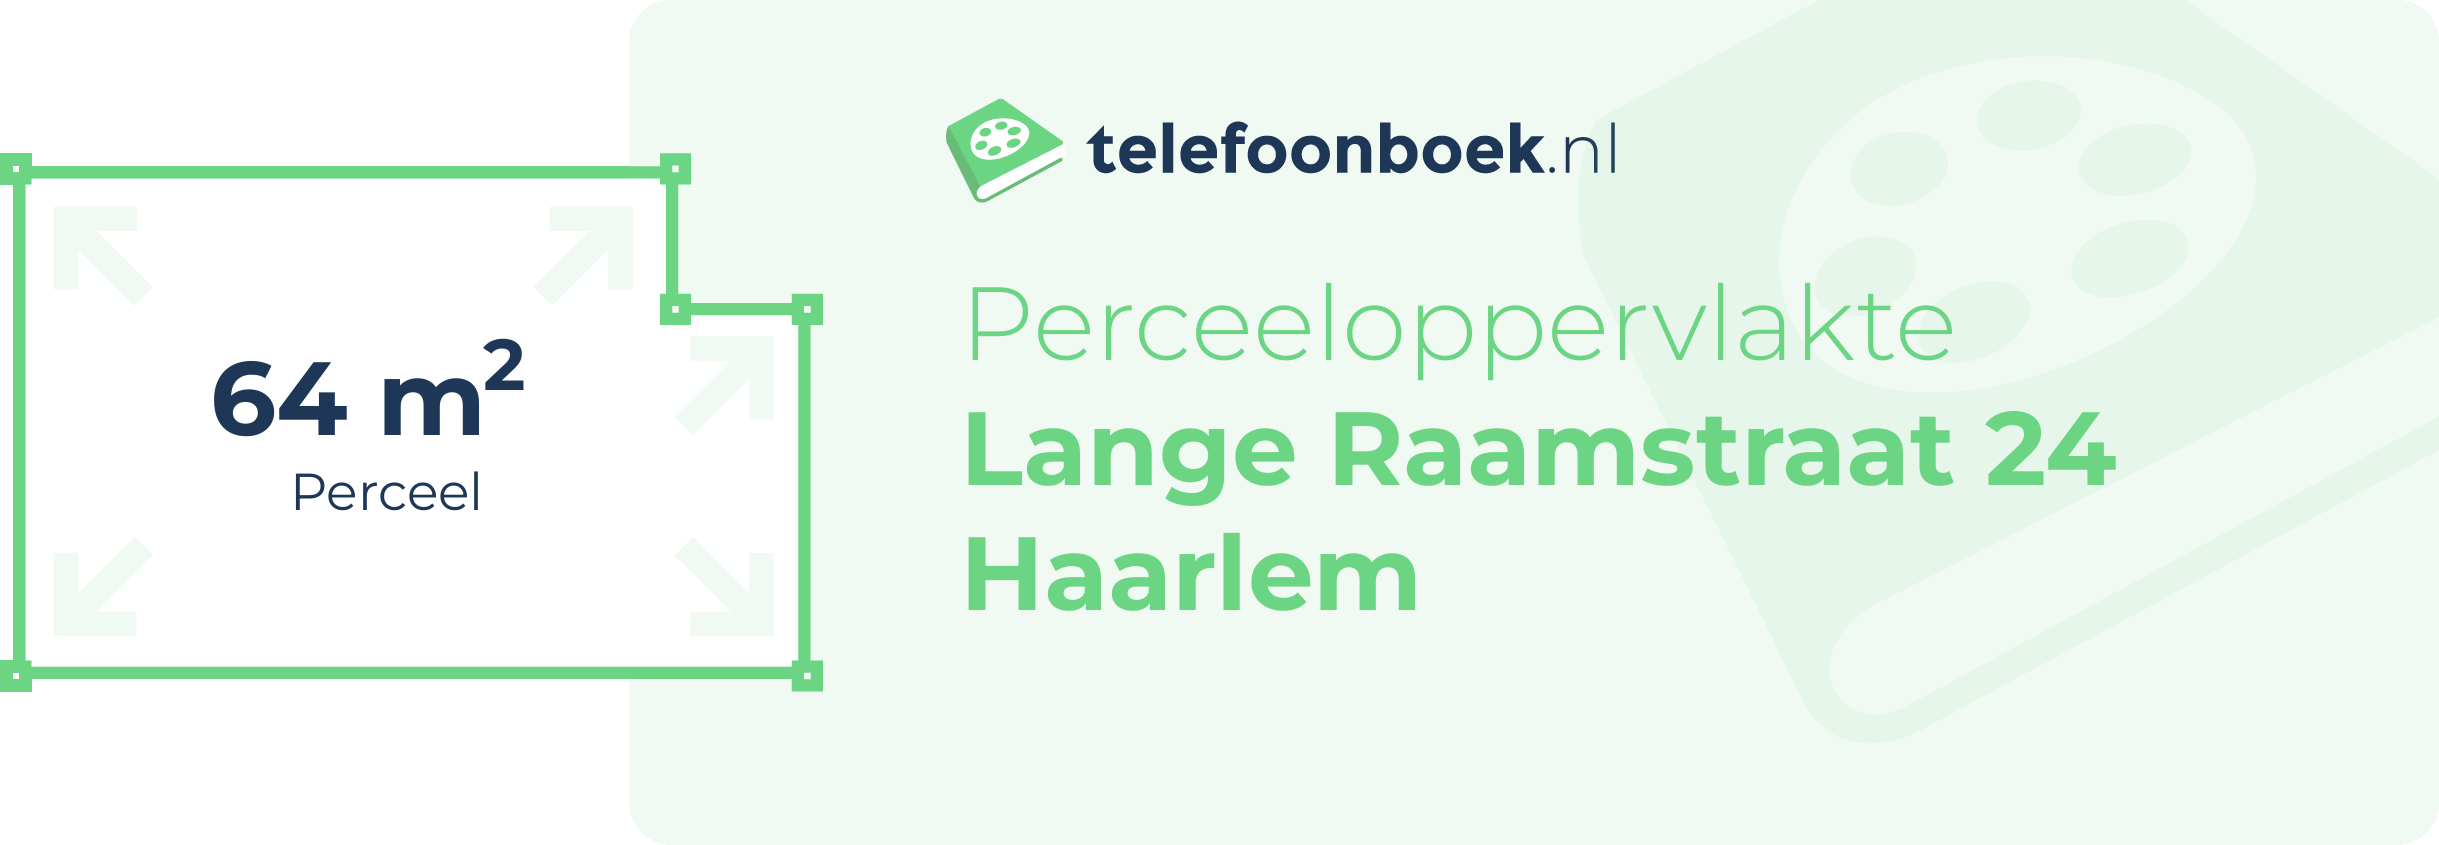 Perceeloppervlakte Lange Raamstraat 24 Haarlem